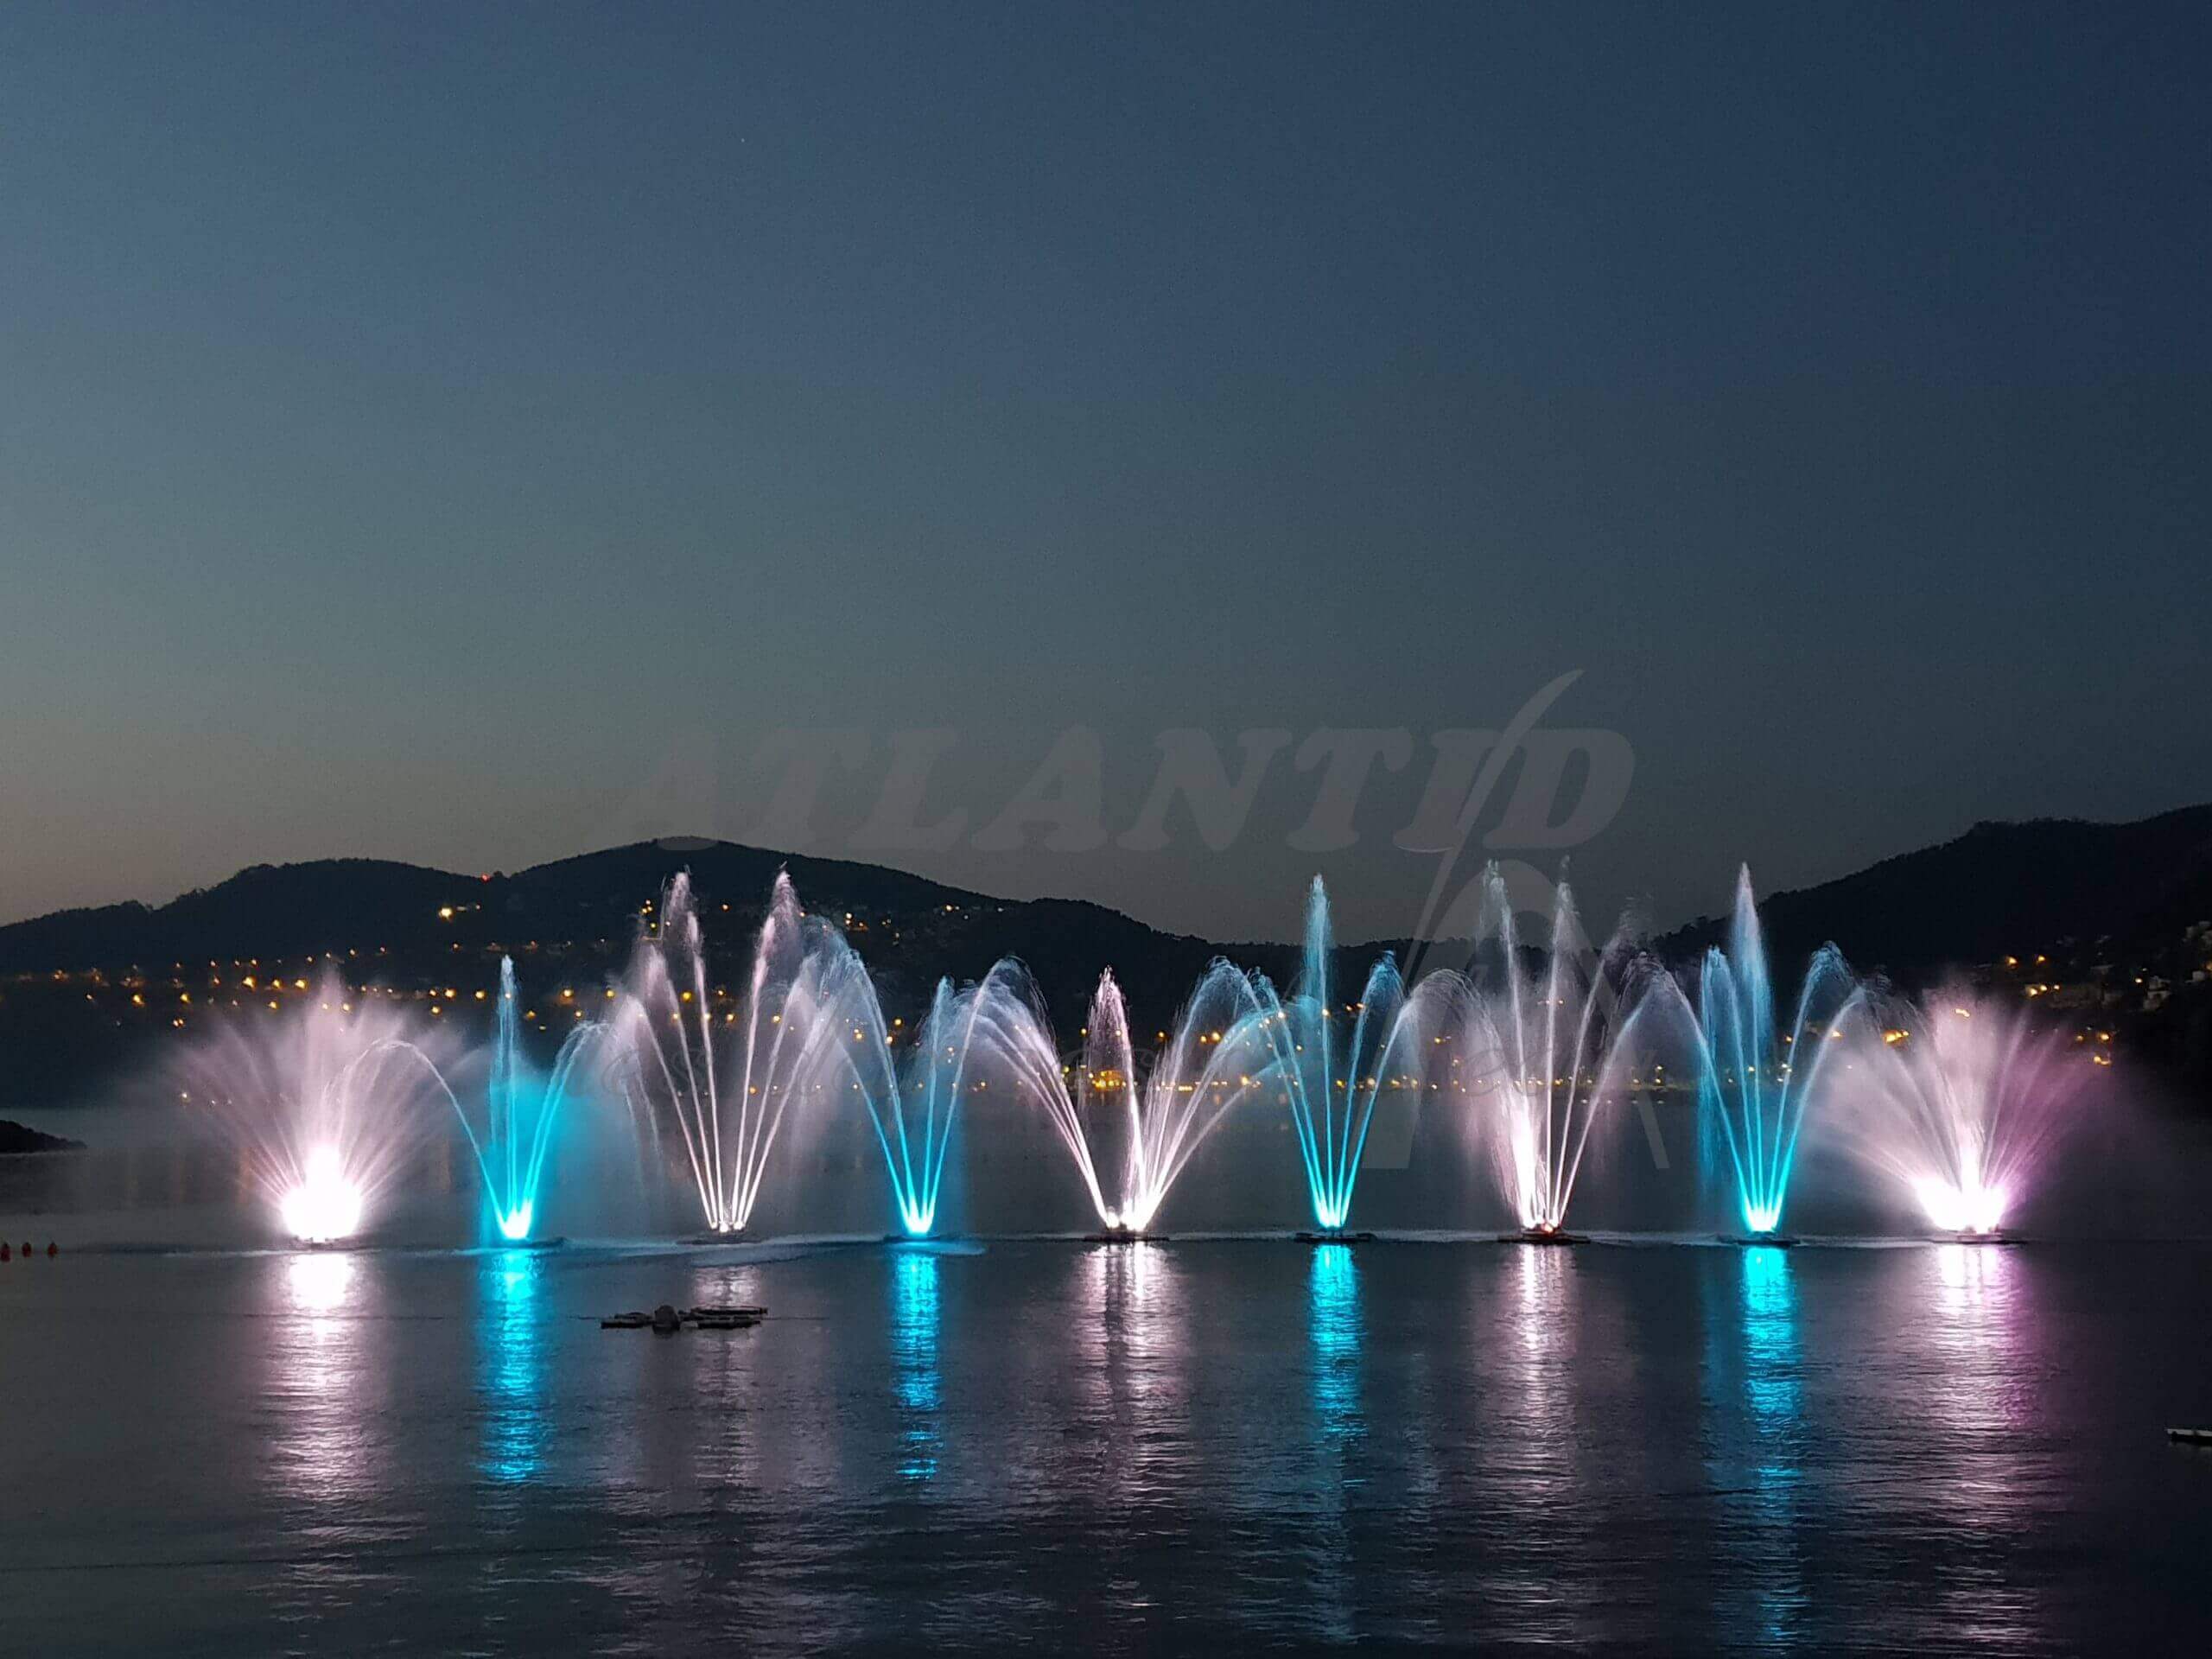 Atlantid - Mandelieu 2019 - Palacio del agua con chorros azules y blancos